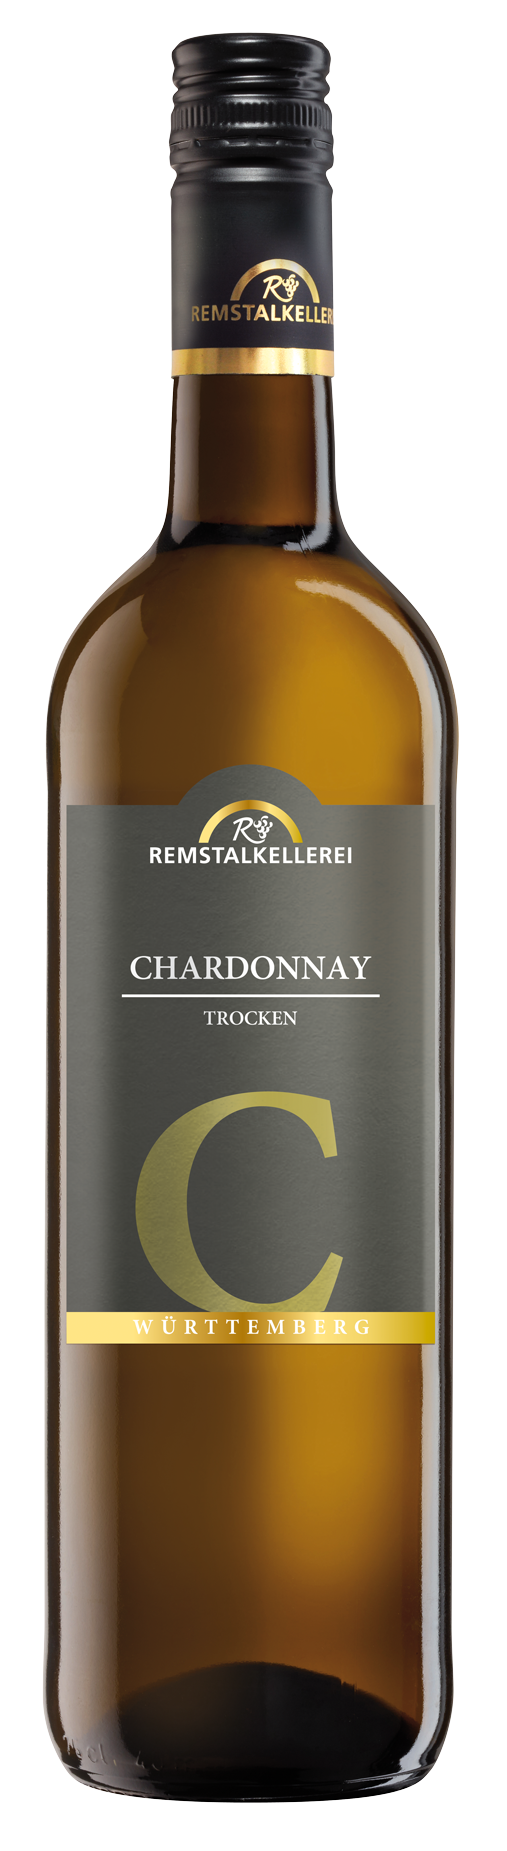 Chardonnay C Qualitätswein - trocken -